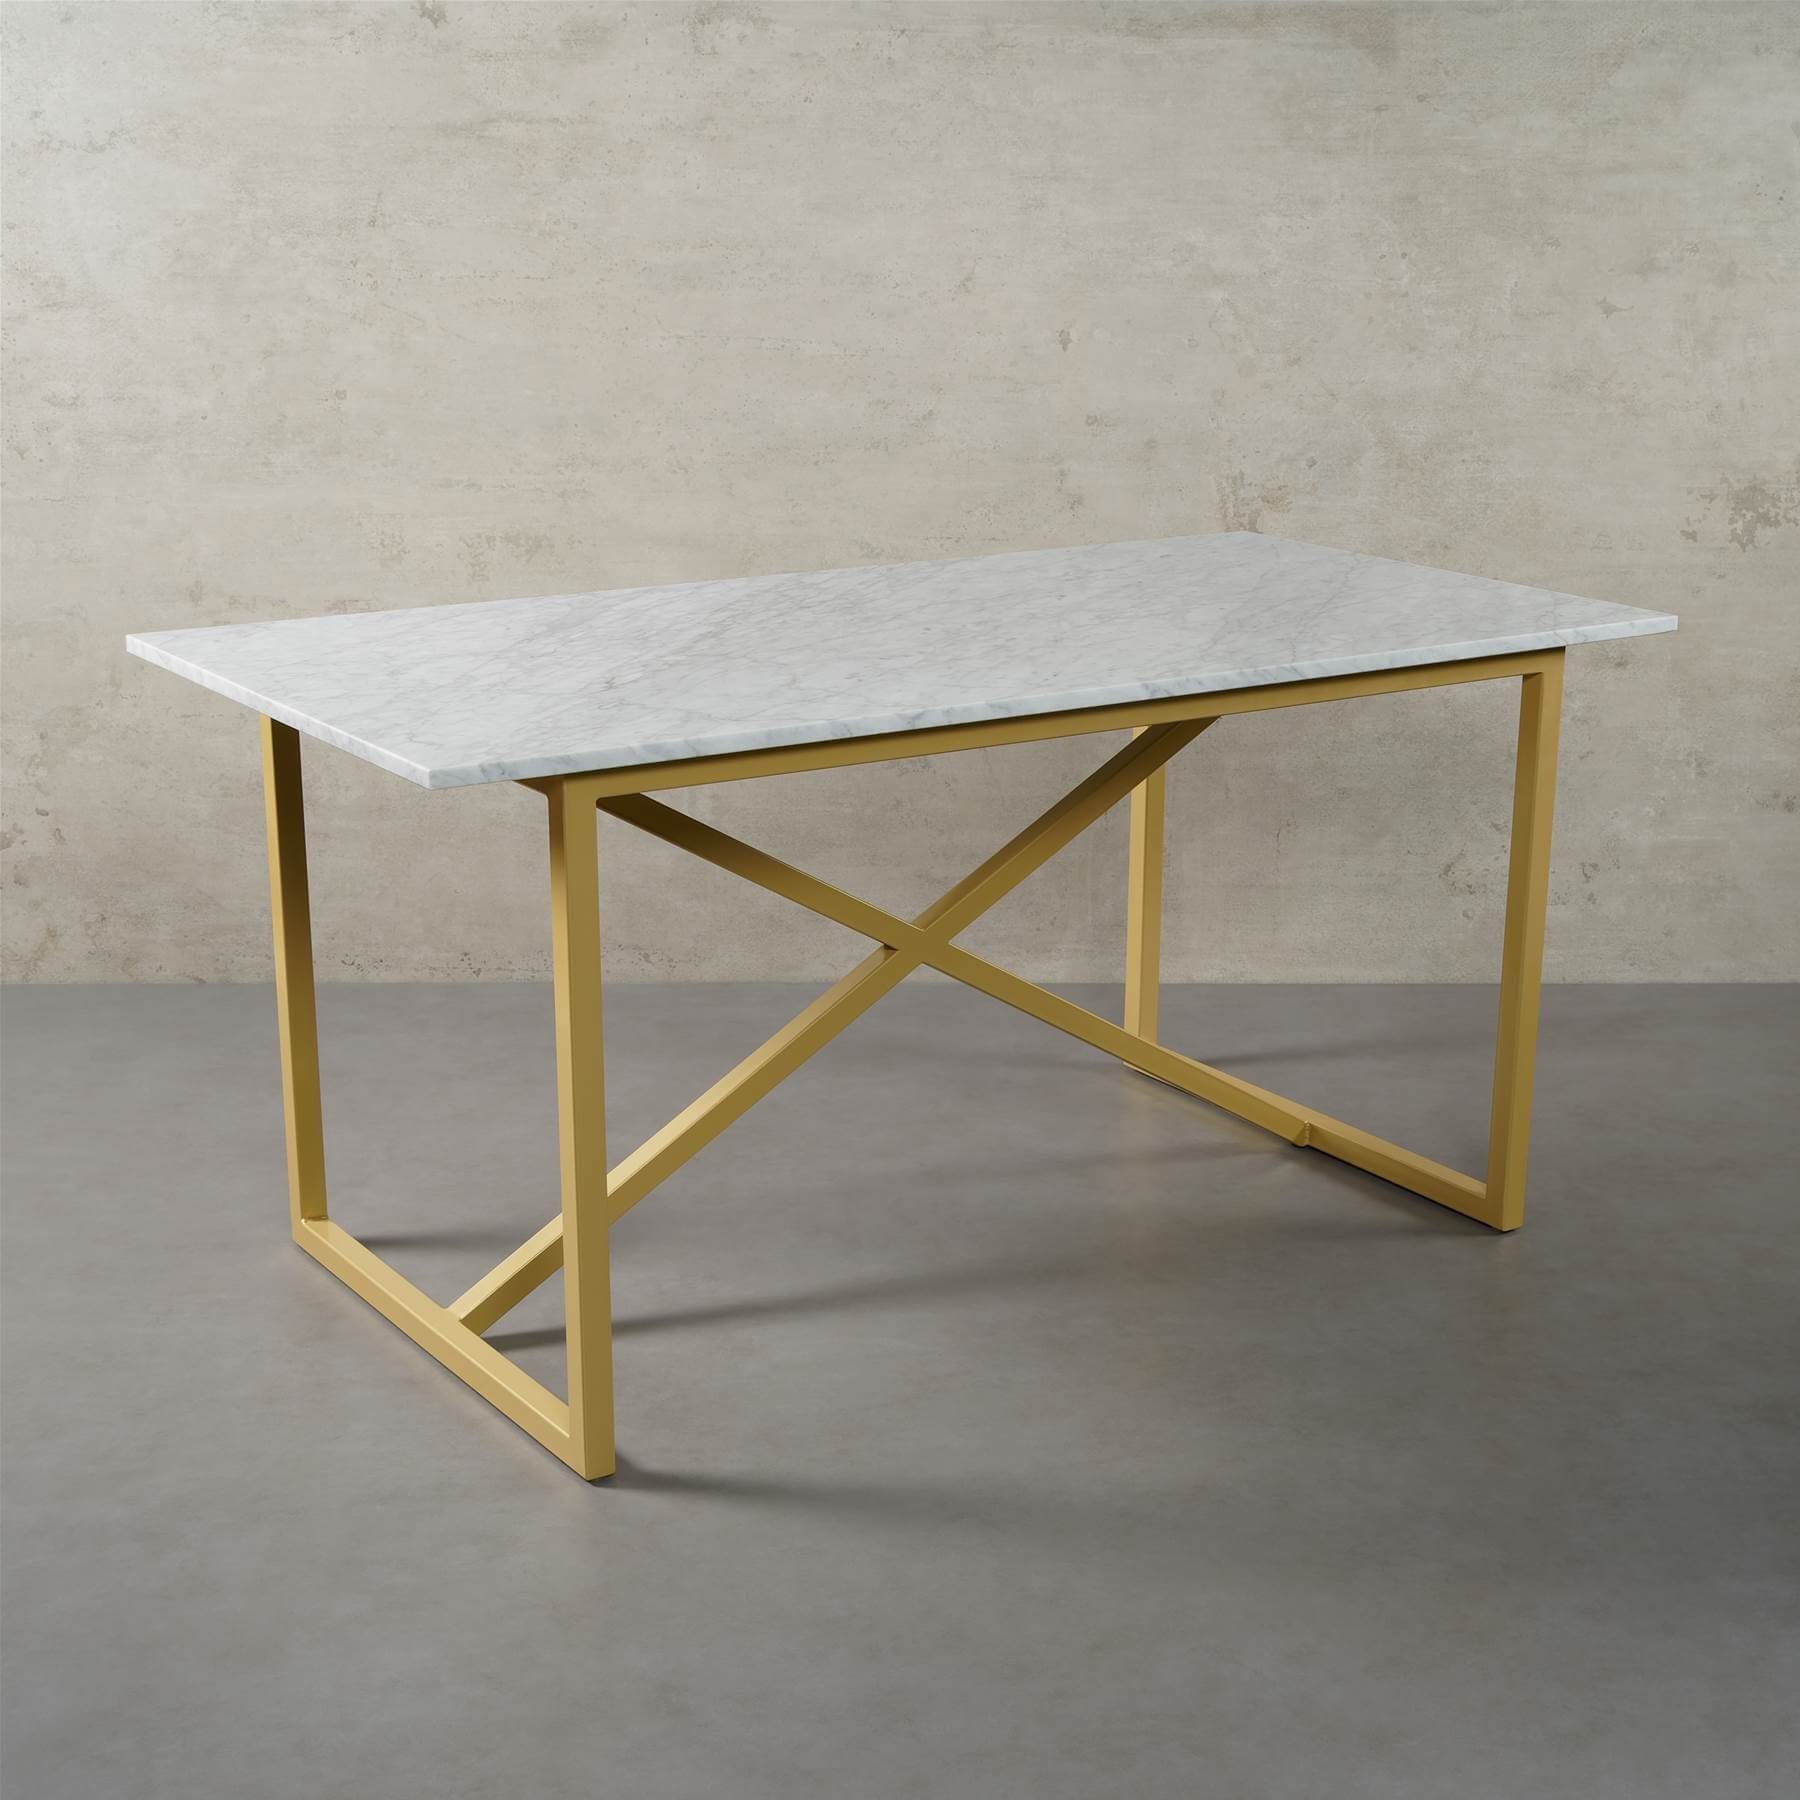 MAGNA Atelier Esstisch PRAG mit ECHTEM MARMOR, Esstisch eckig, gold Metallgestell, 160cmx80cmx75cm & 200x100x75cm Bianco Carrara